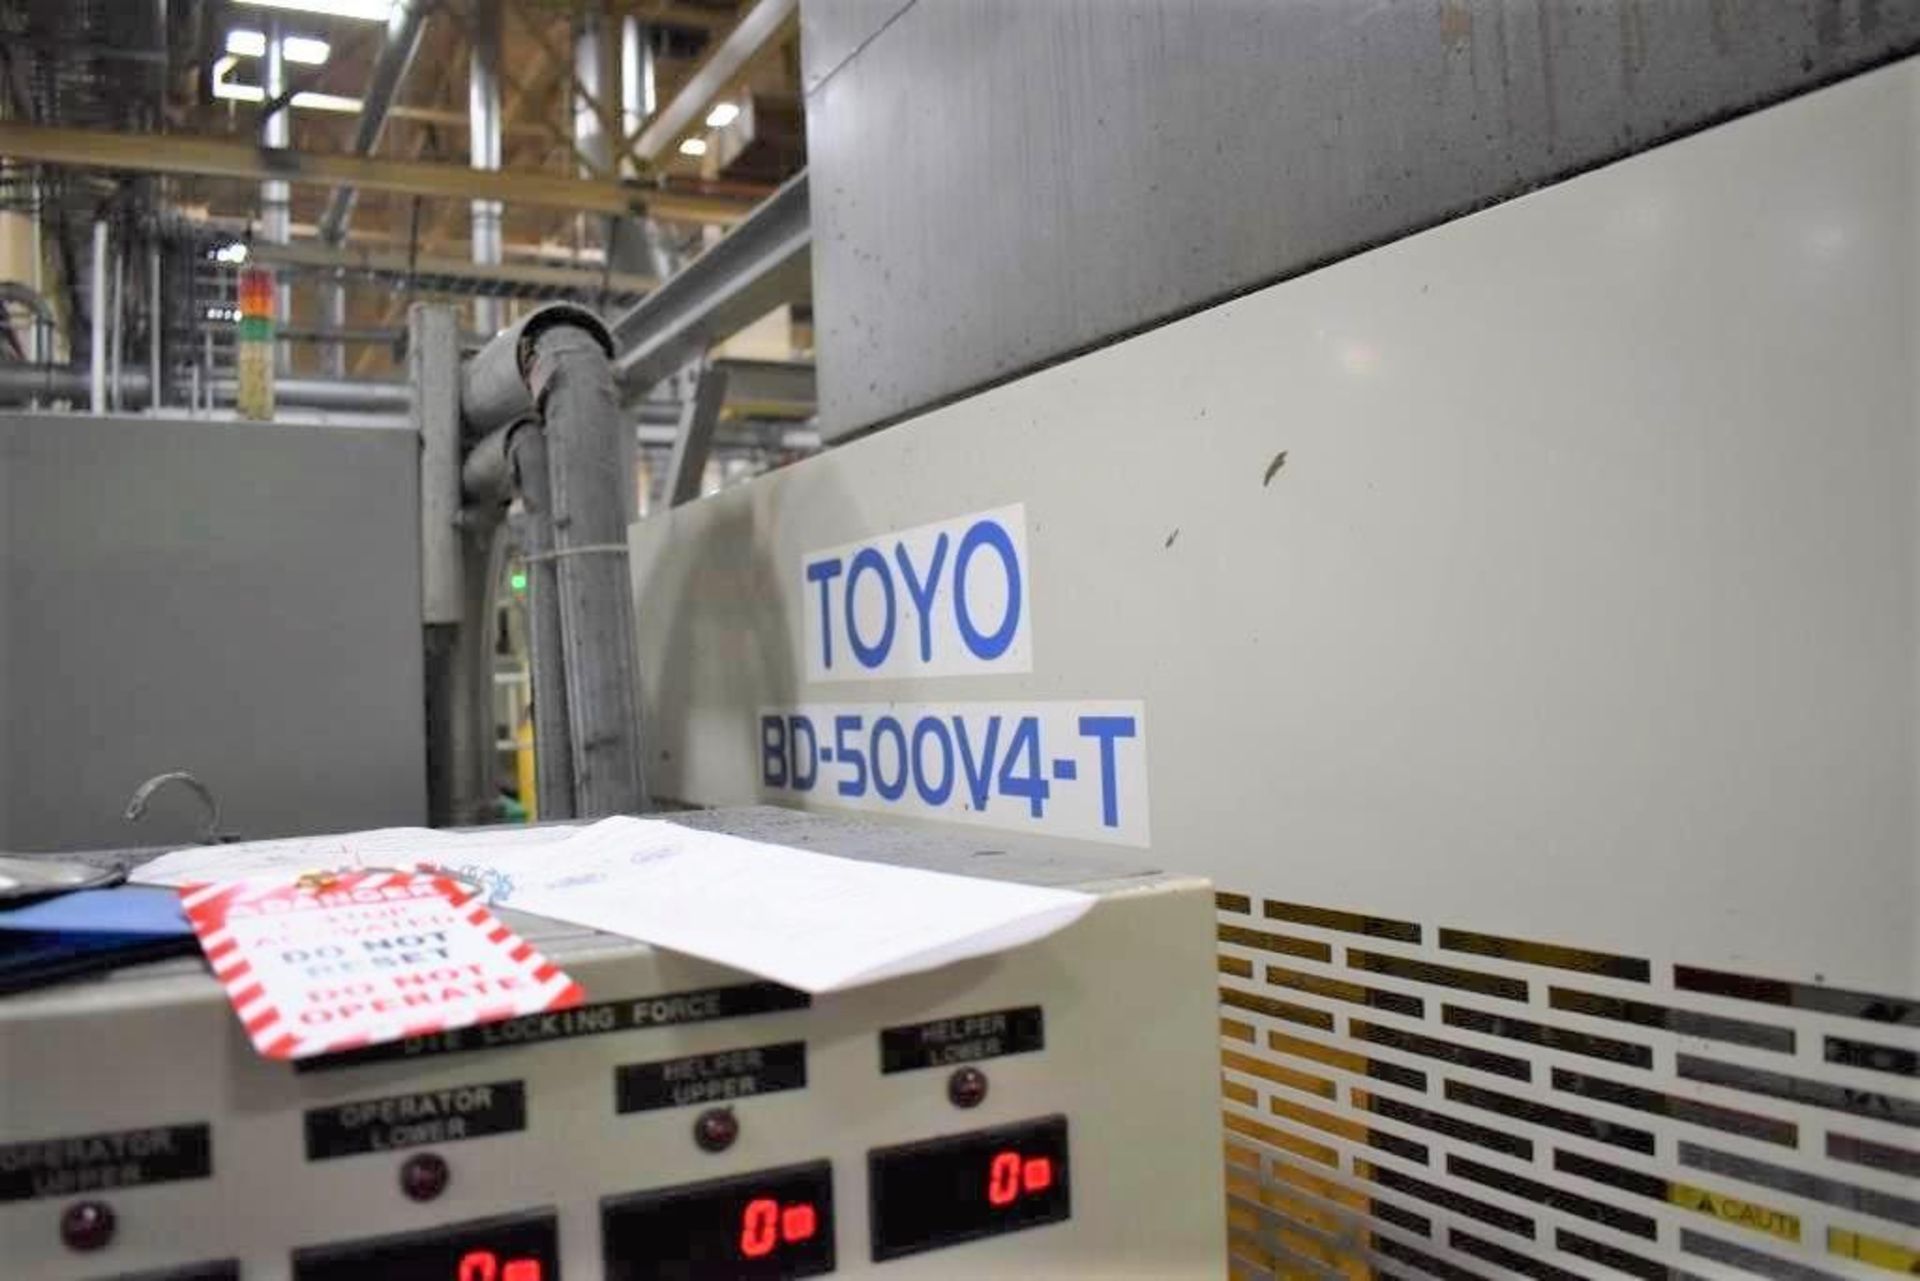 Toyo BD-500V4-T 492-Ton Die Cast Machine - Image 13 of 13